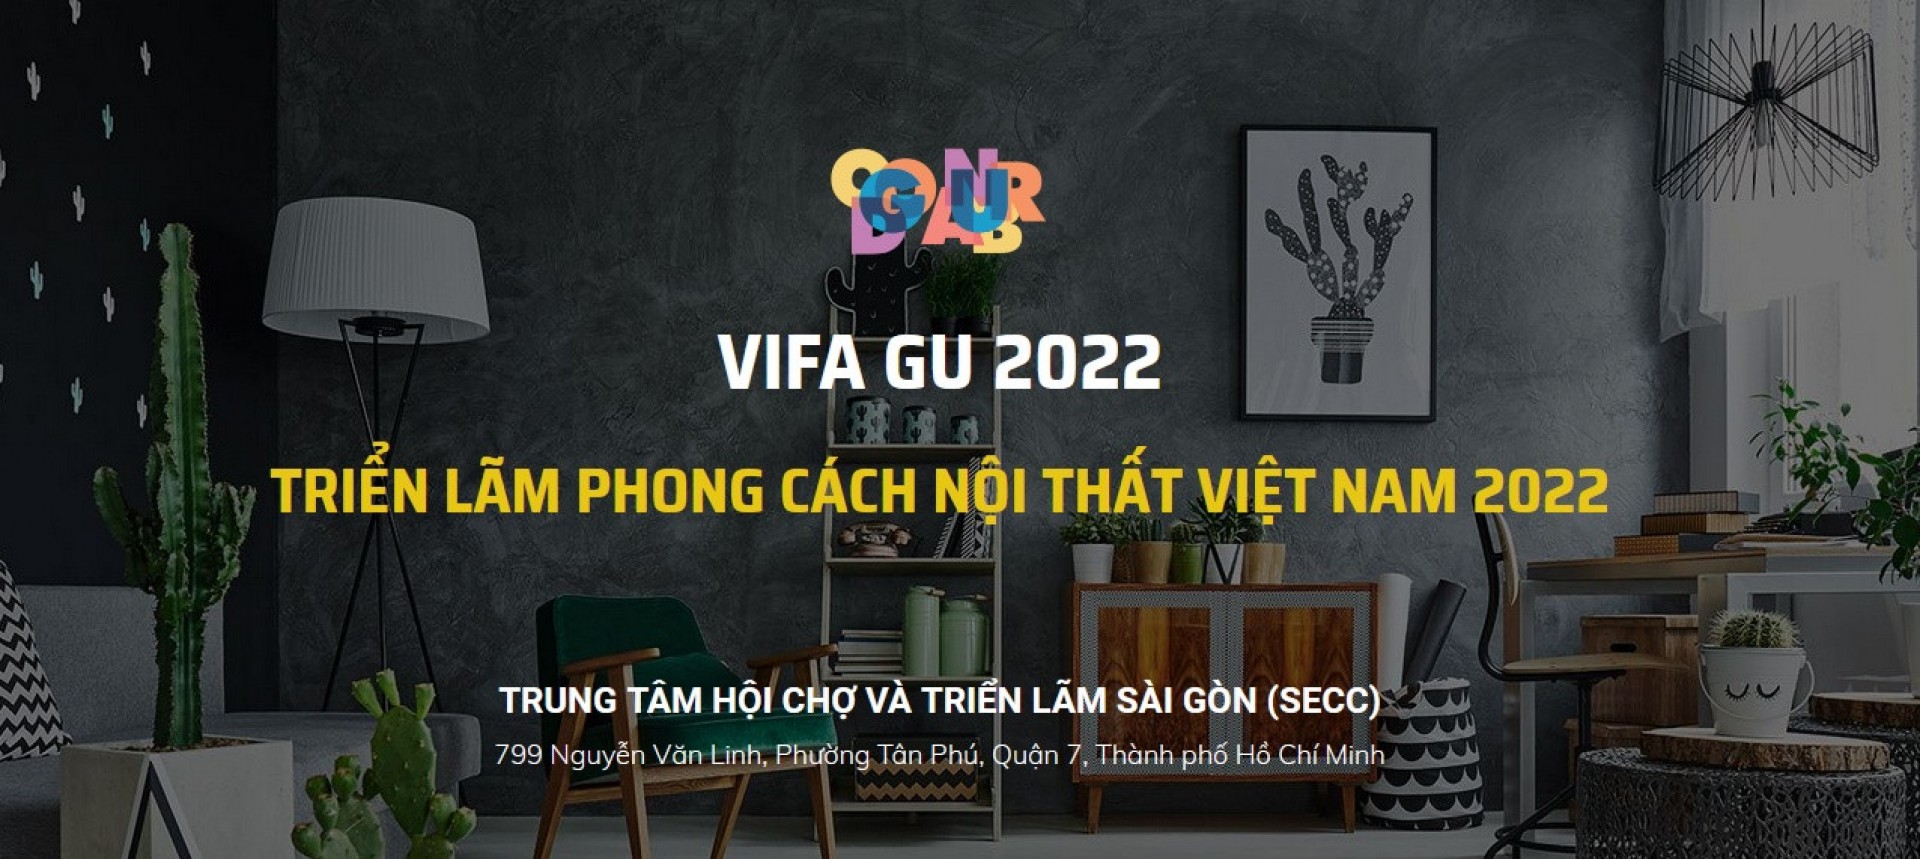 VIFA GU 2022 - Triển lãm phong cách nội thất Việt Nam